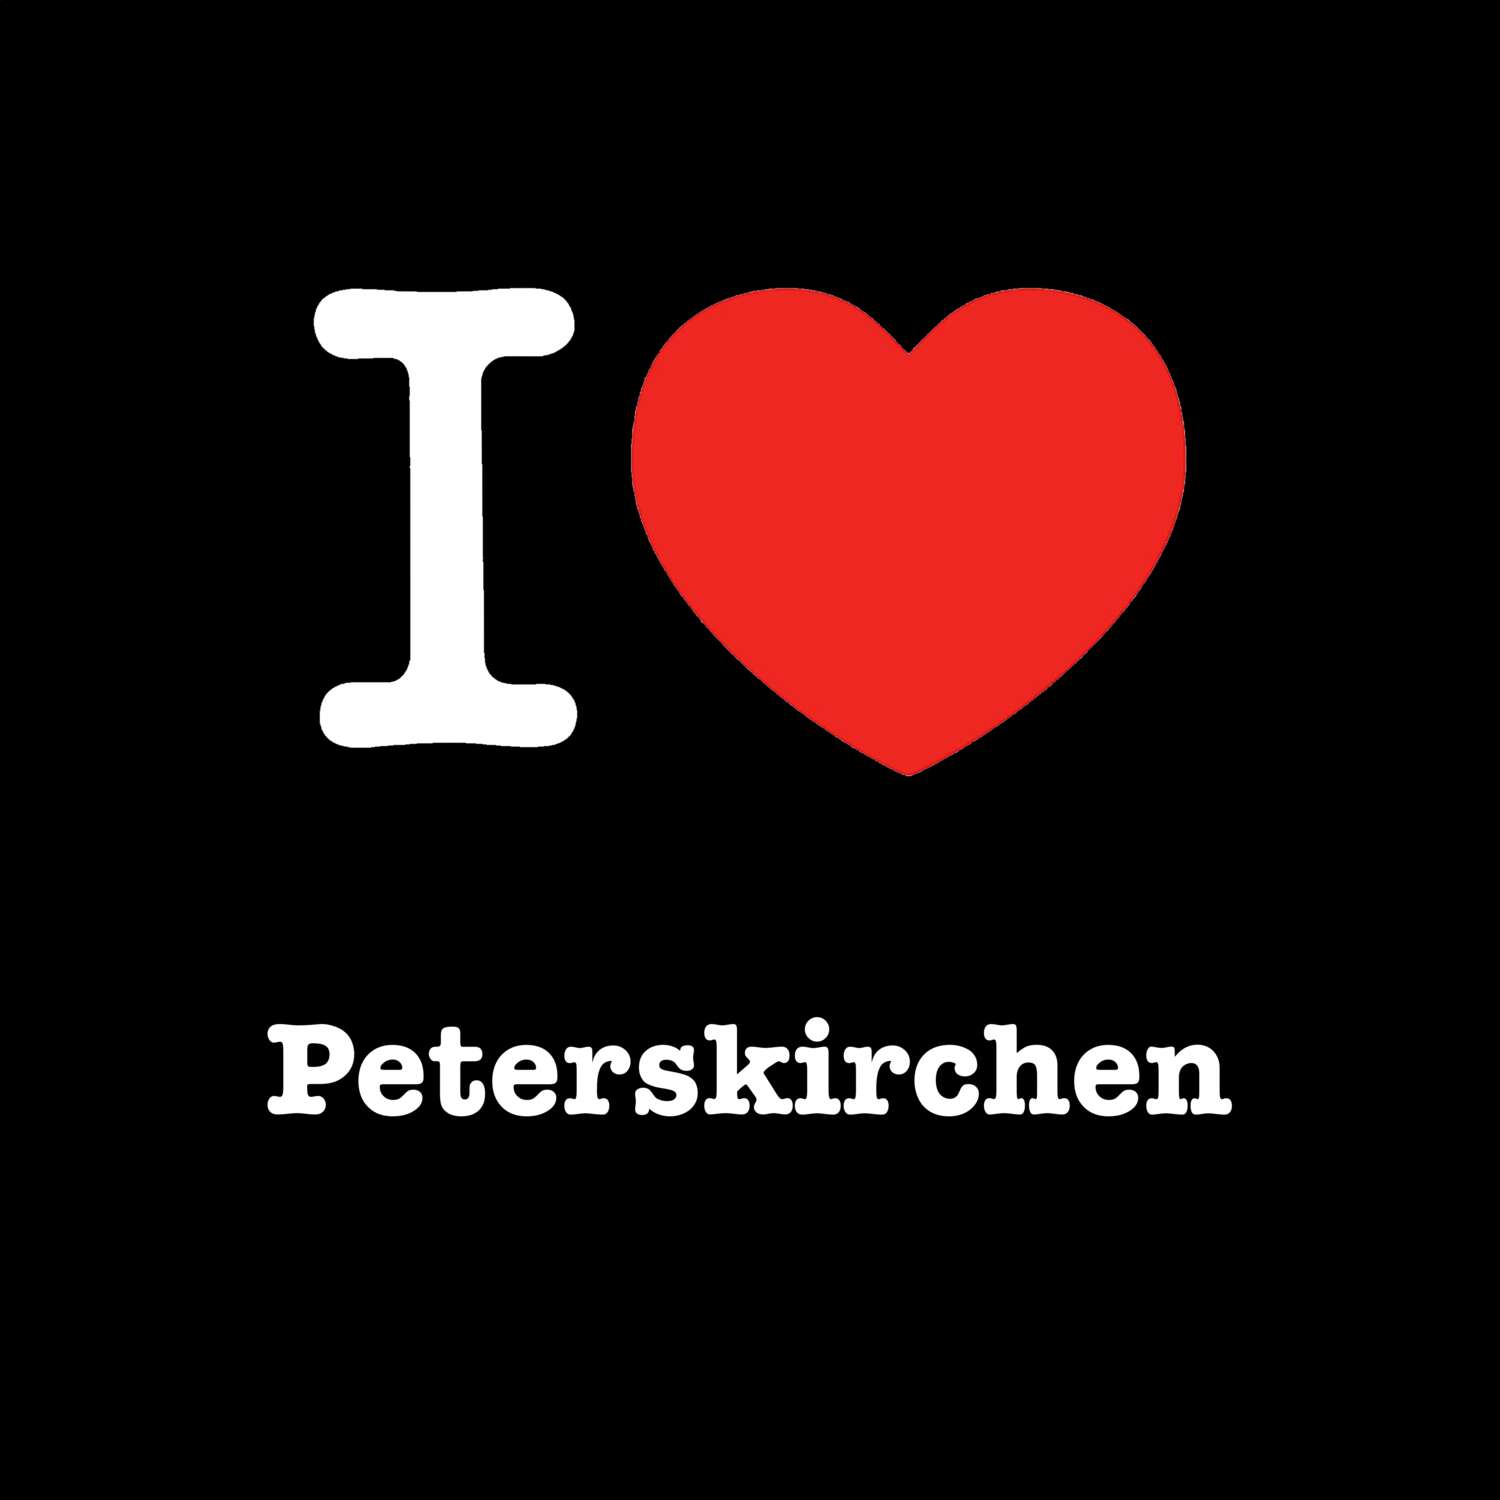 Peterskirchen T-Shirt »I love«